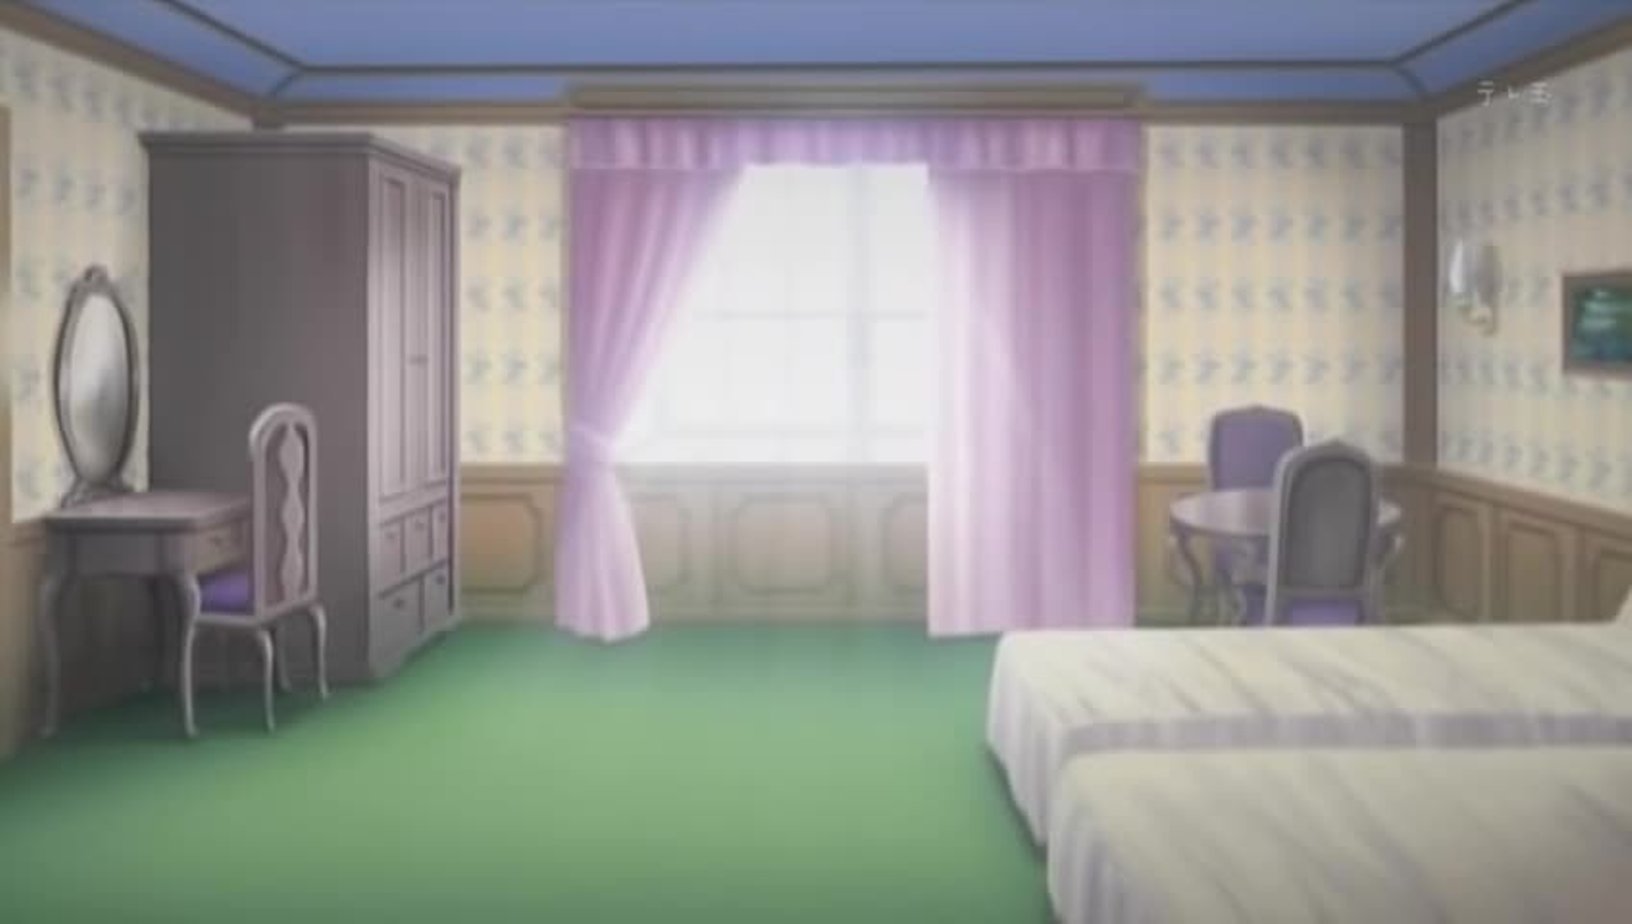 Комната с двумя кроватями аниме